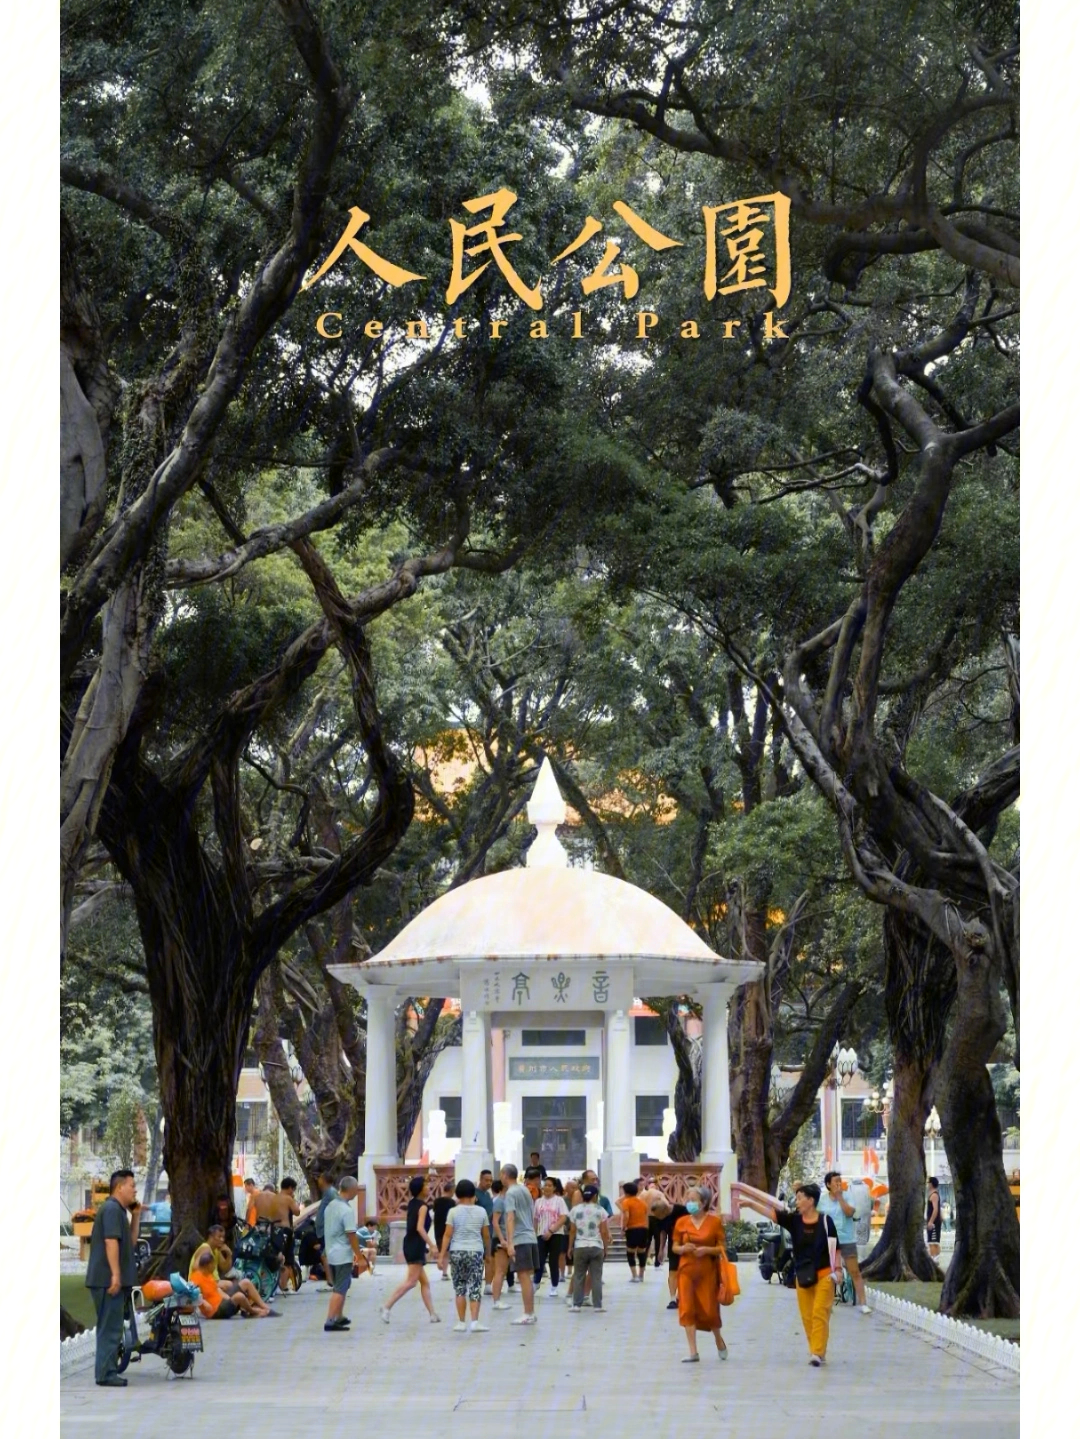 广州人民公园改造前后图片